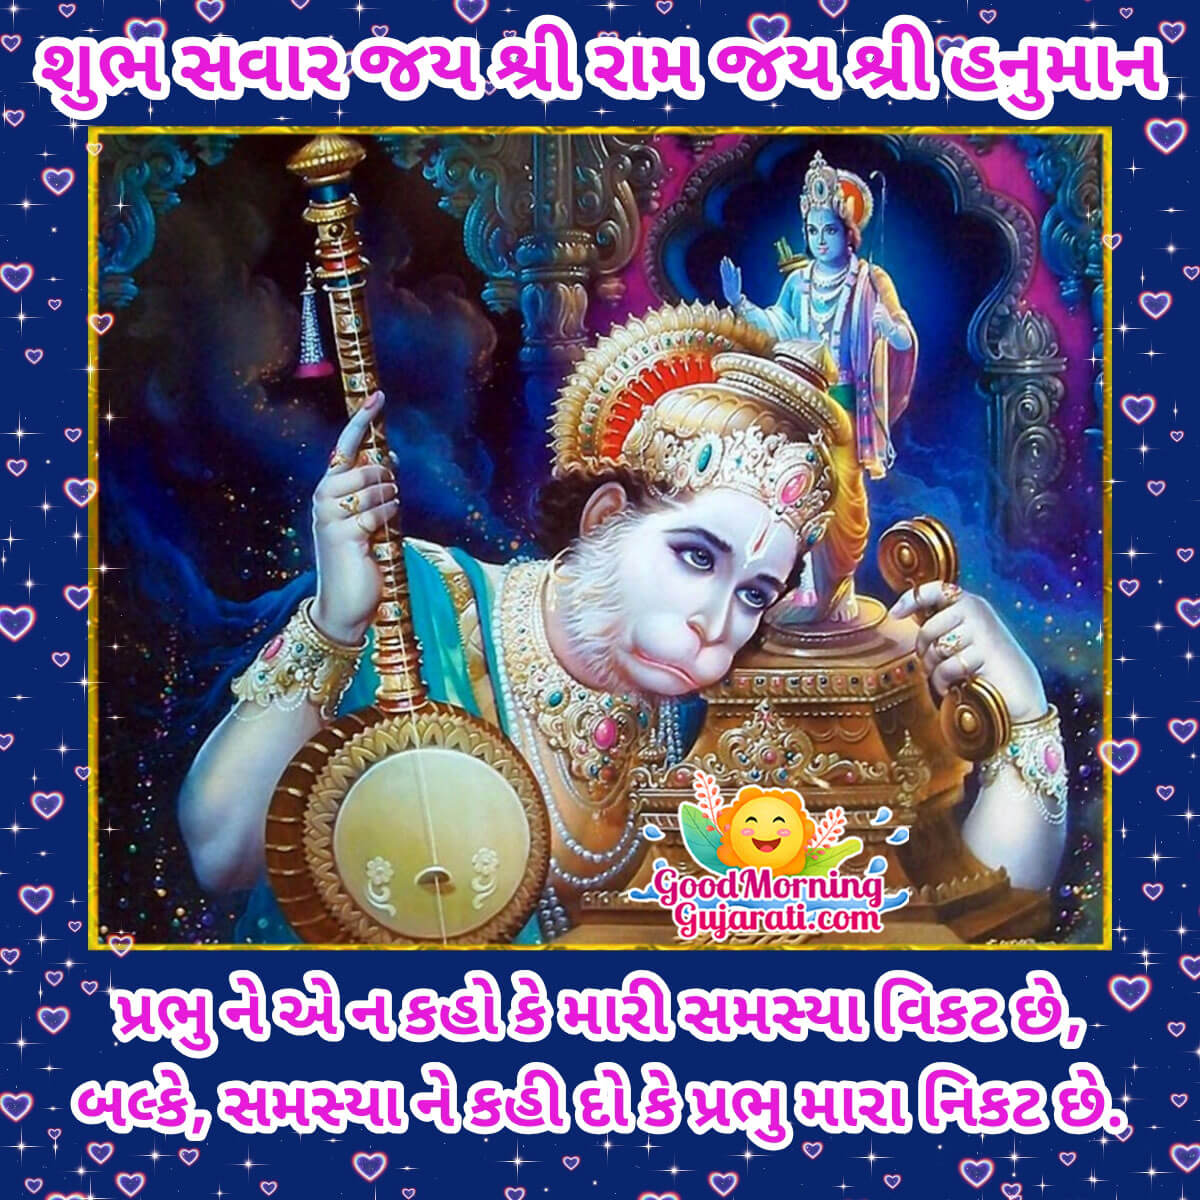 Shubh Savar Jai Shri Hanuman